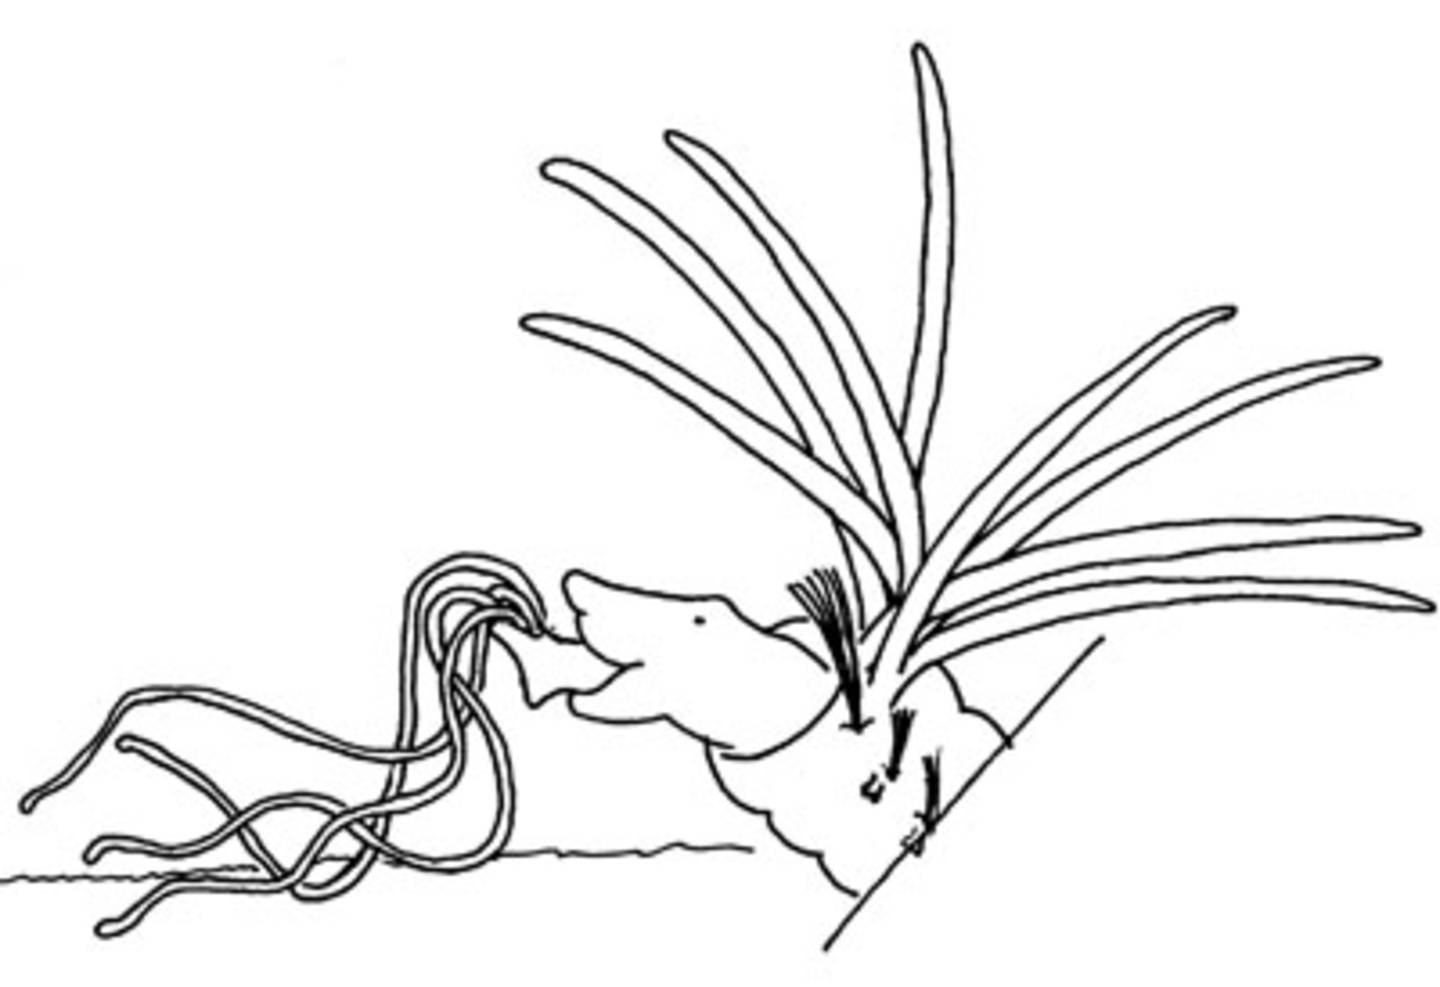 Zeichnung des Vorderendes von Hypania mit ausgestreckten tentakeln